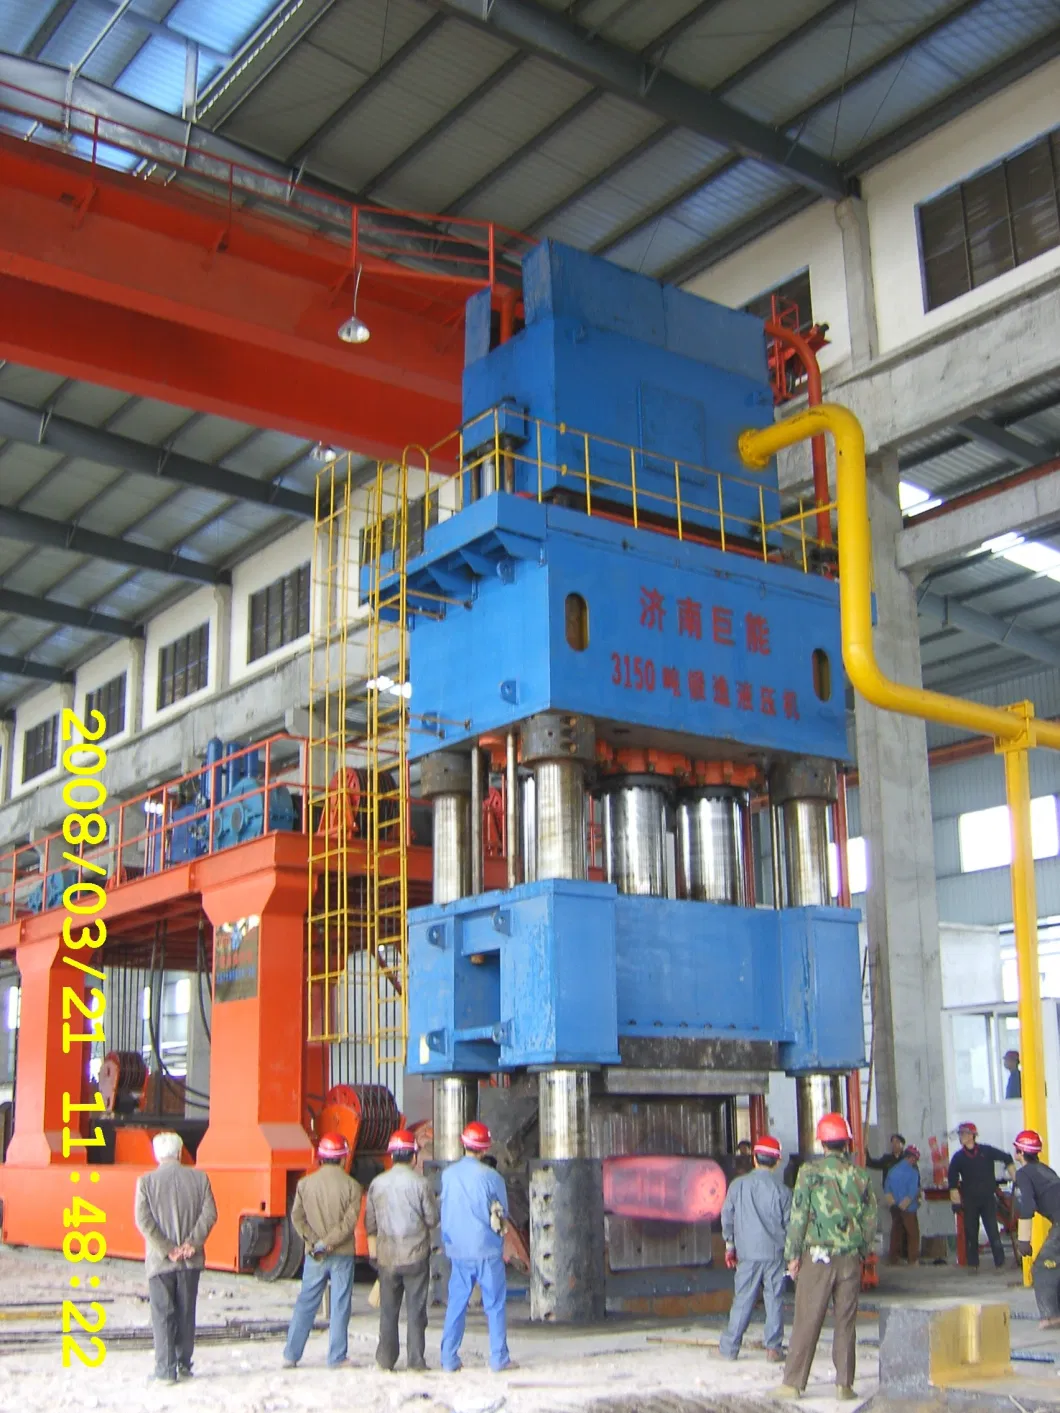 100000 Kn Heavy Duty Metal Forging Hydraulic Presses